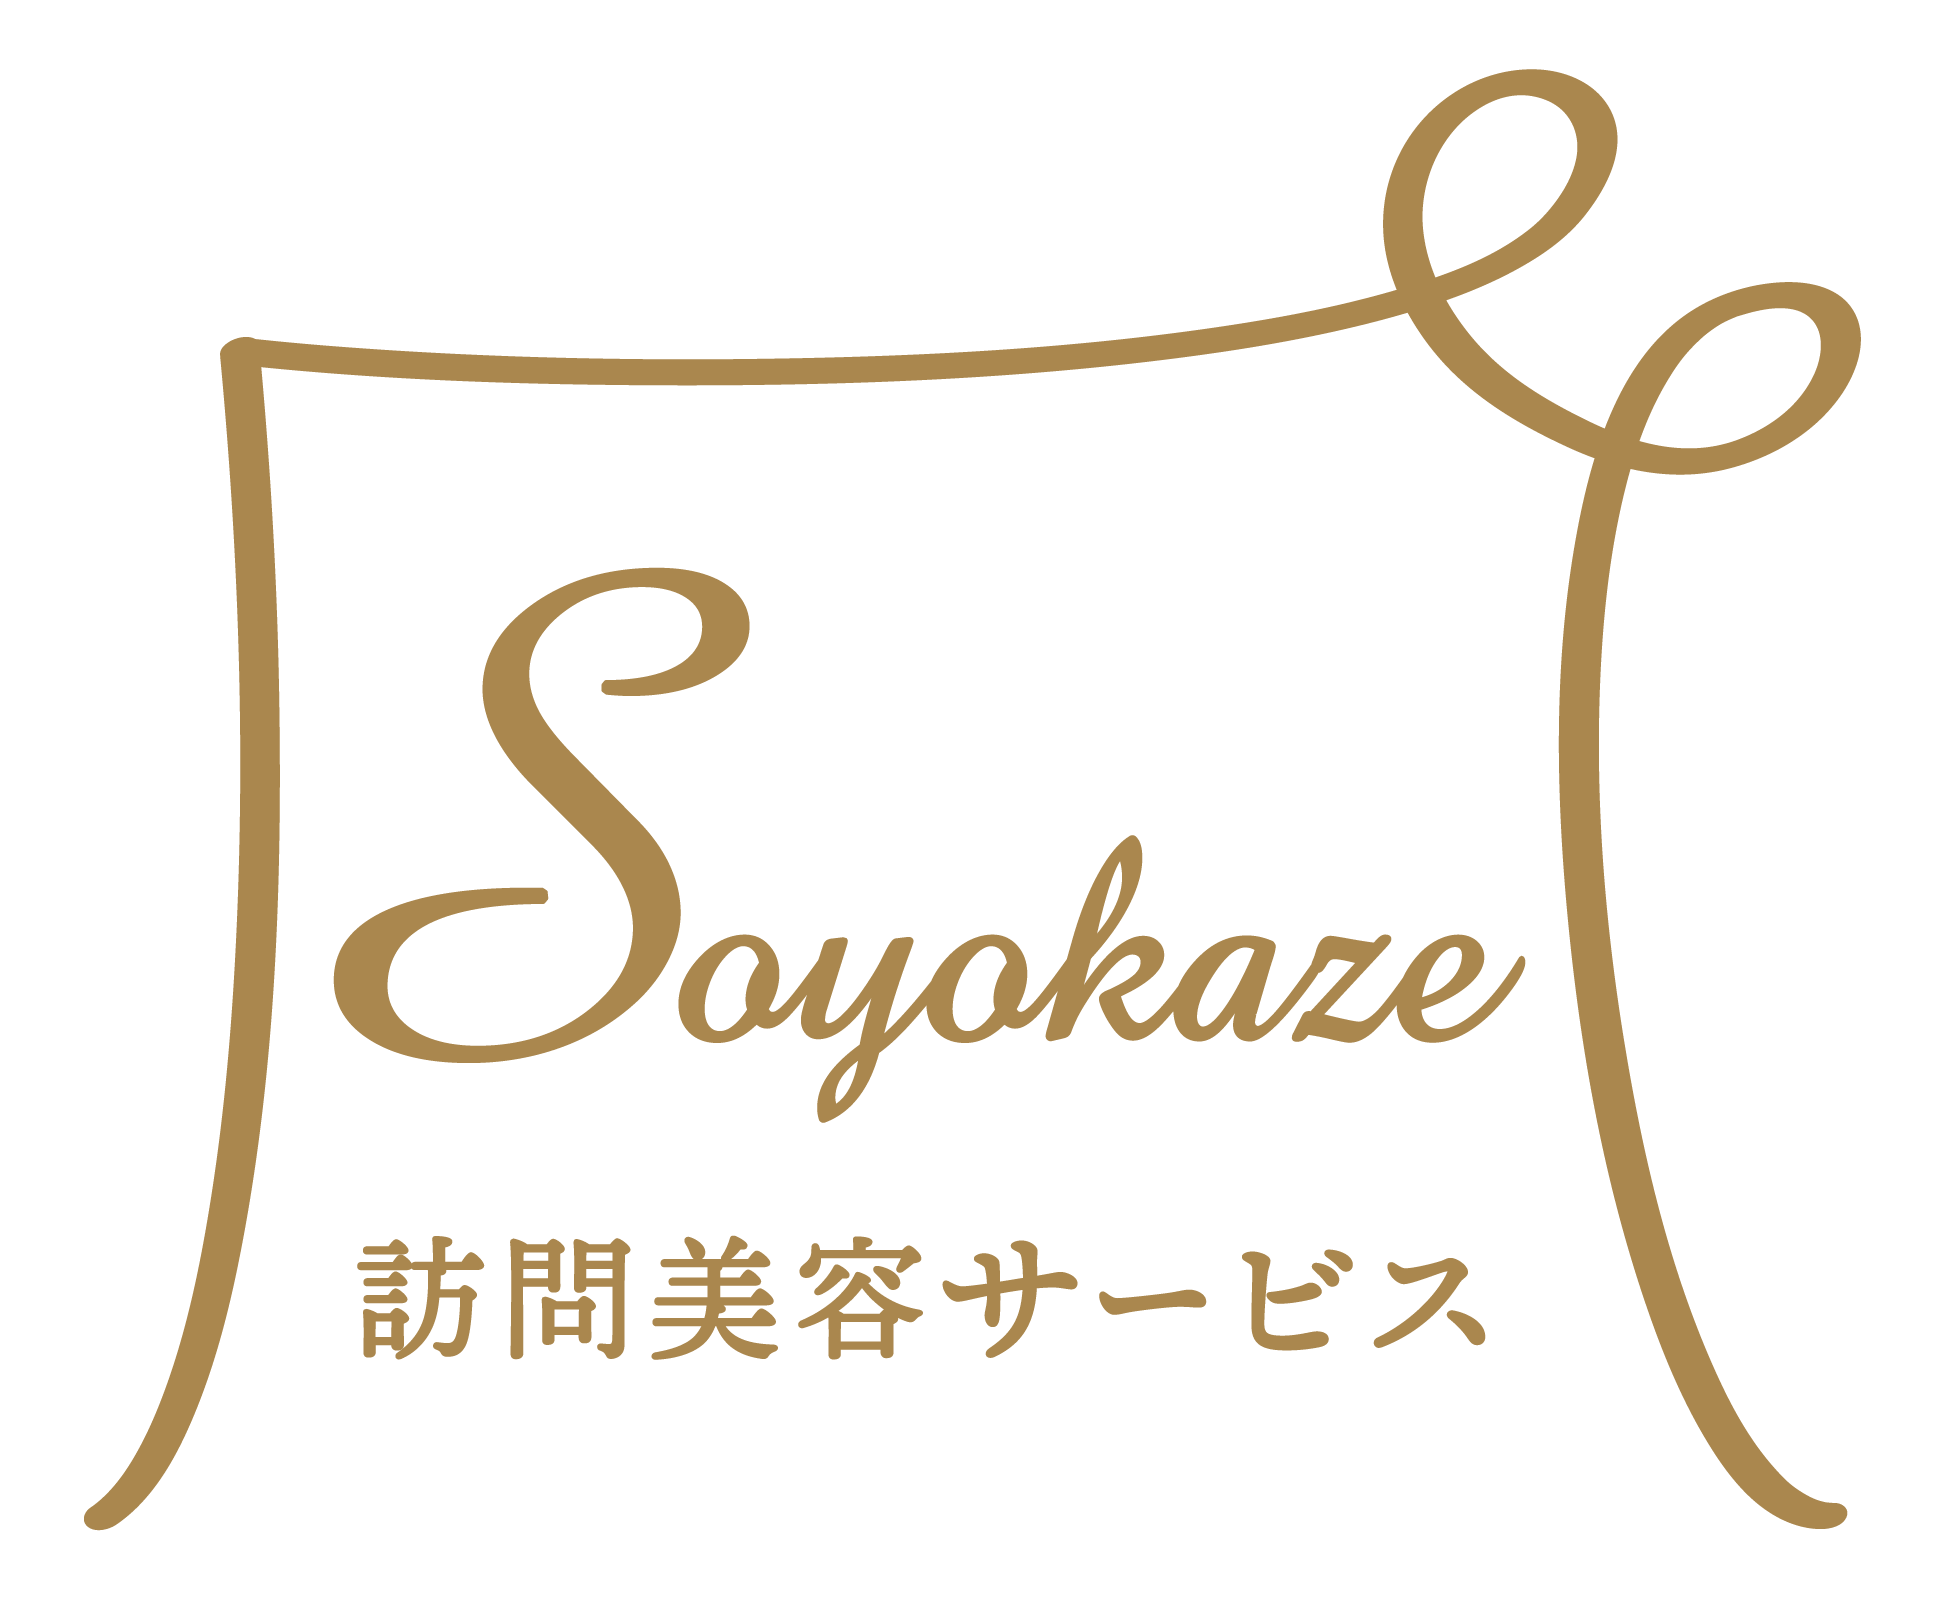 企業アイコン | 株式会社SOYOKAZE